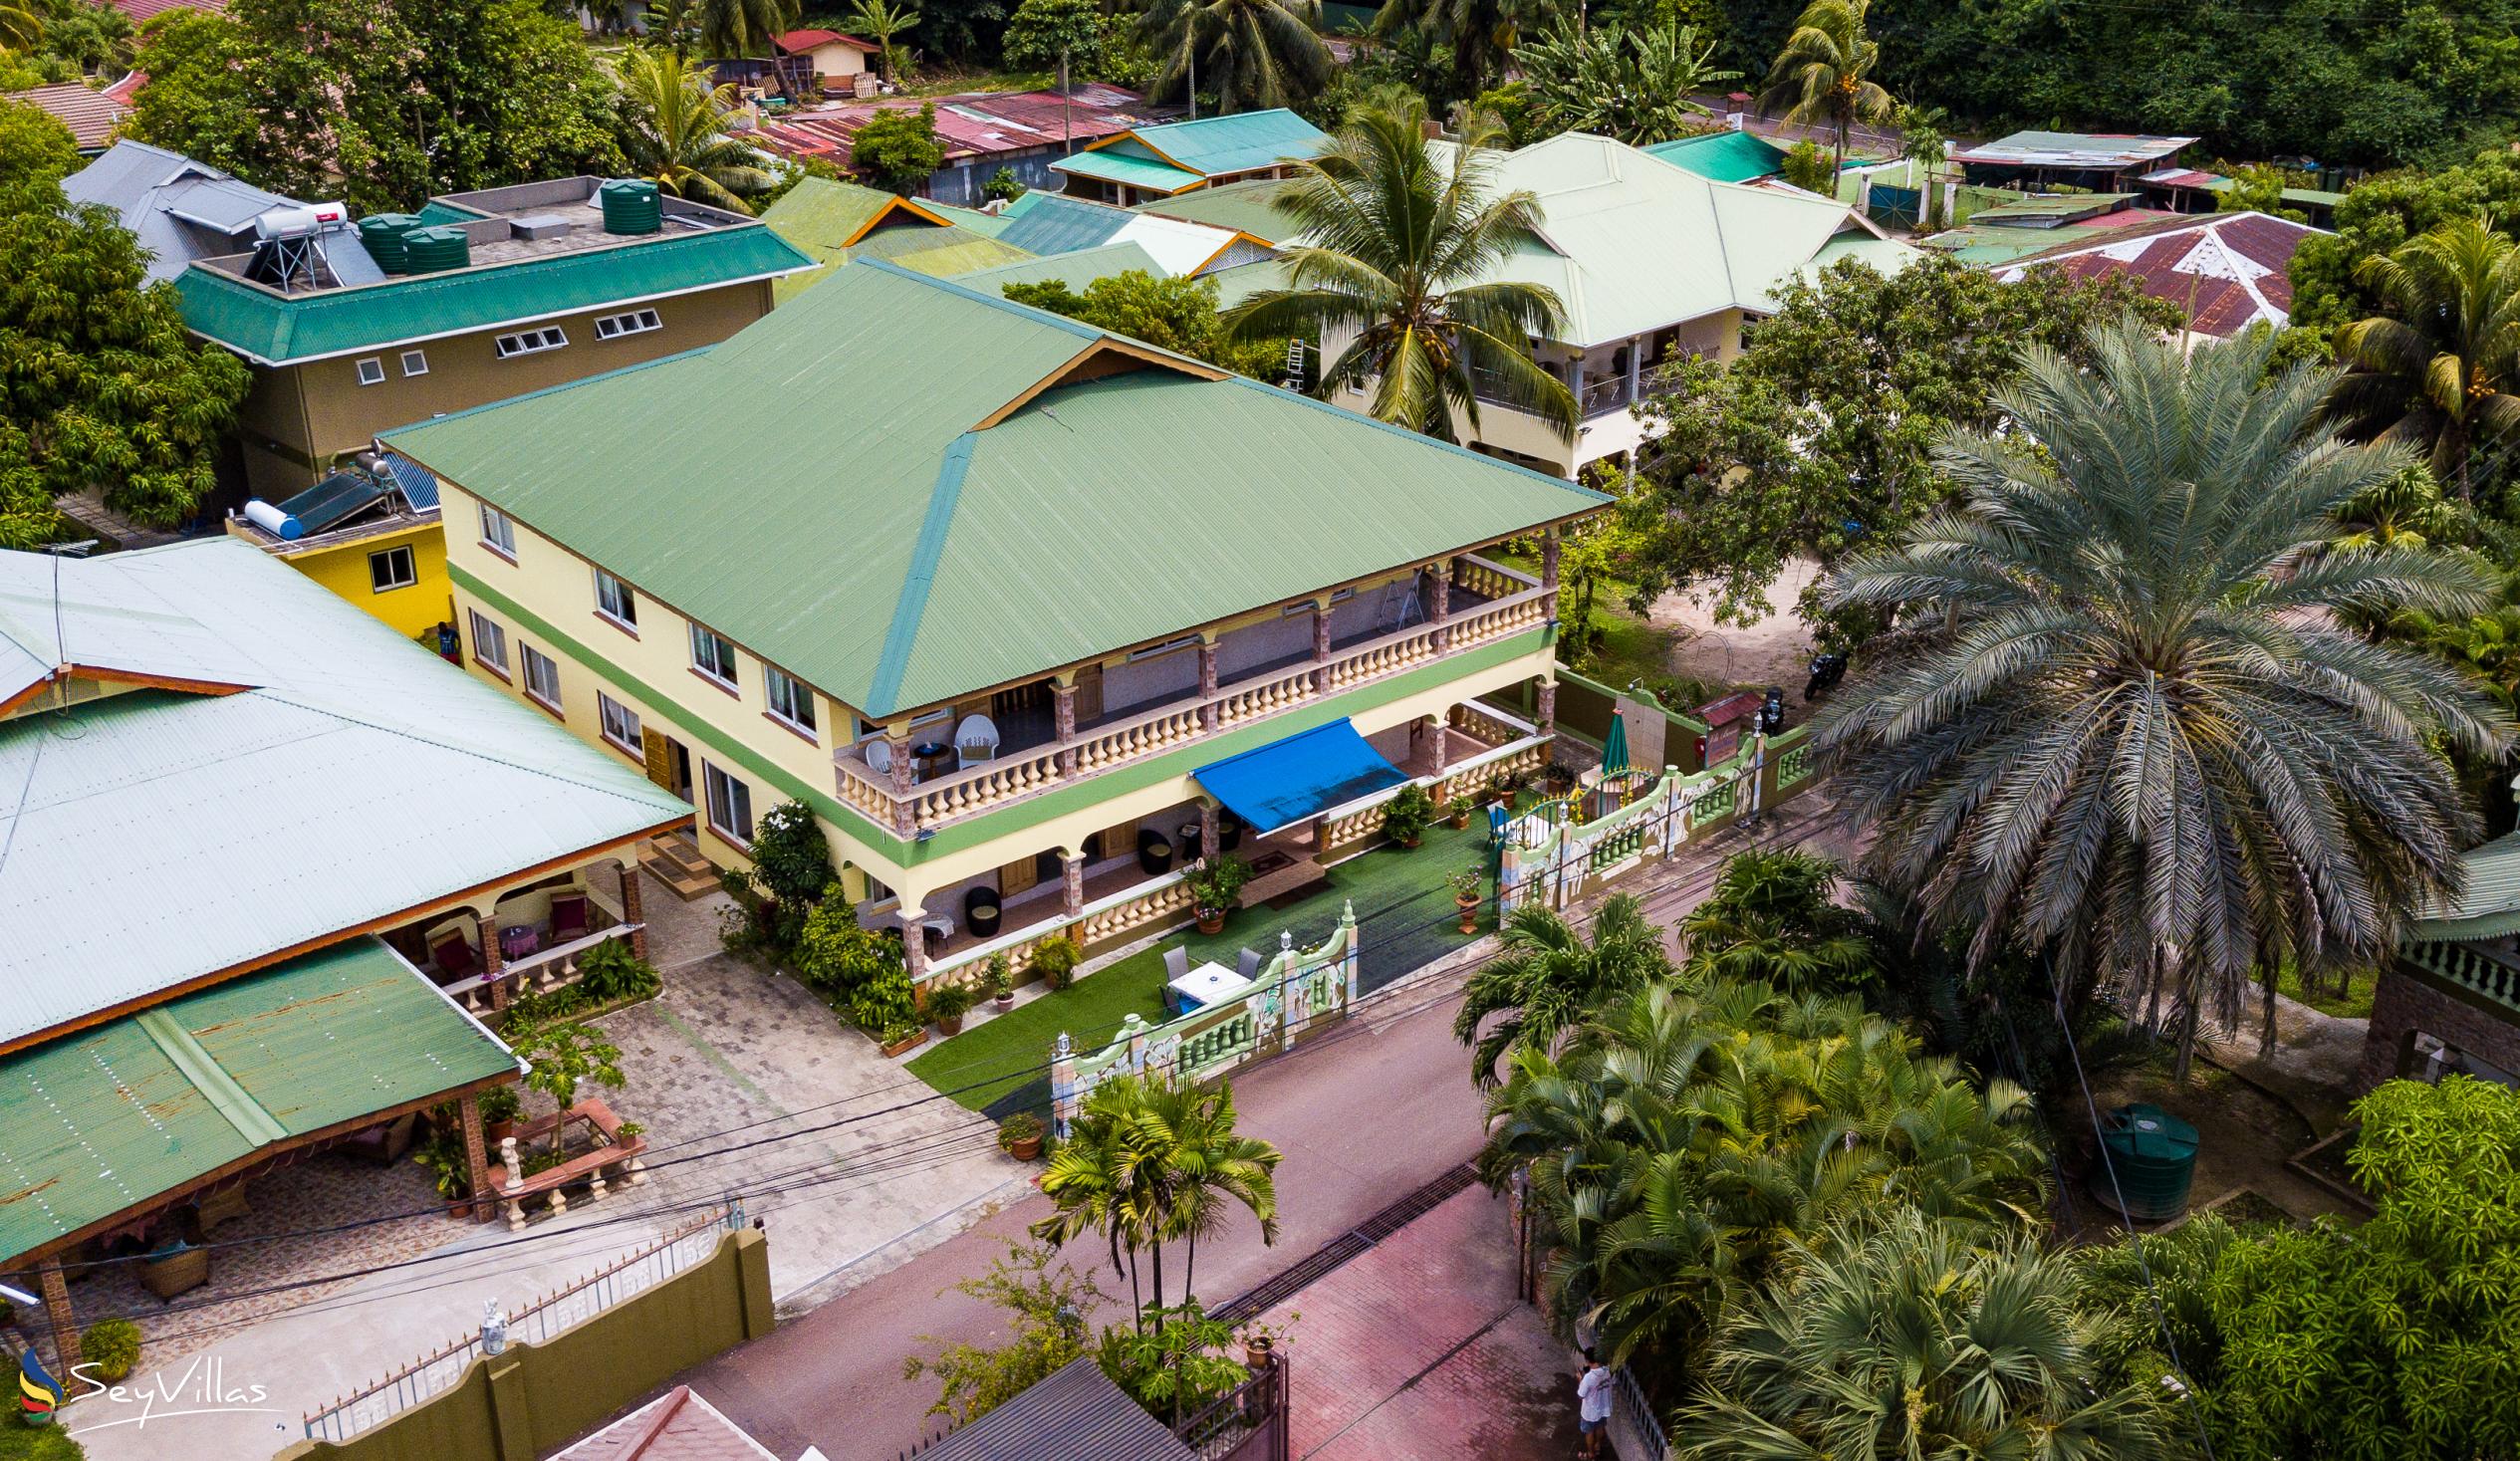 Foto 25: Villa Bananier - Aussenbereich - Praslin (Seychellen)